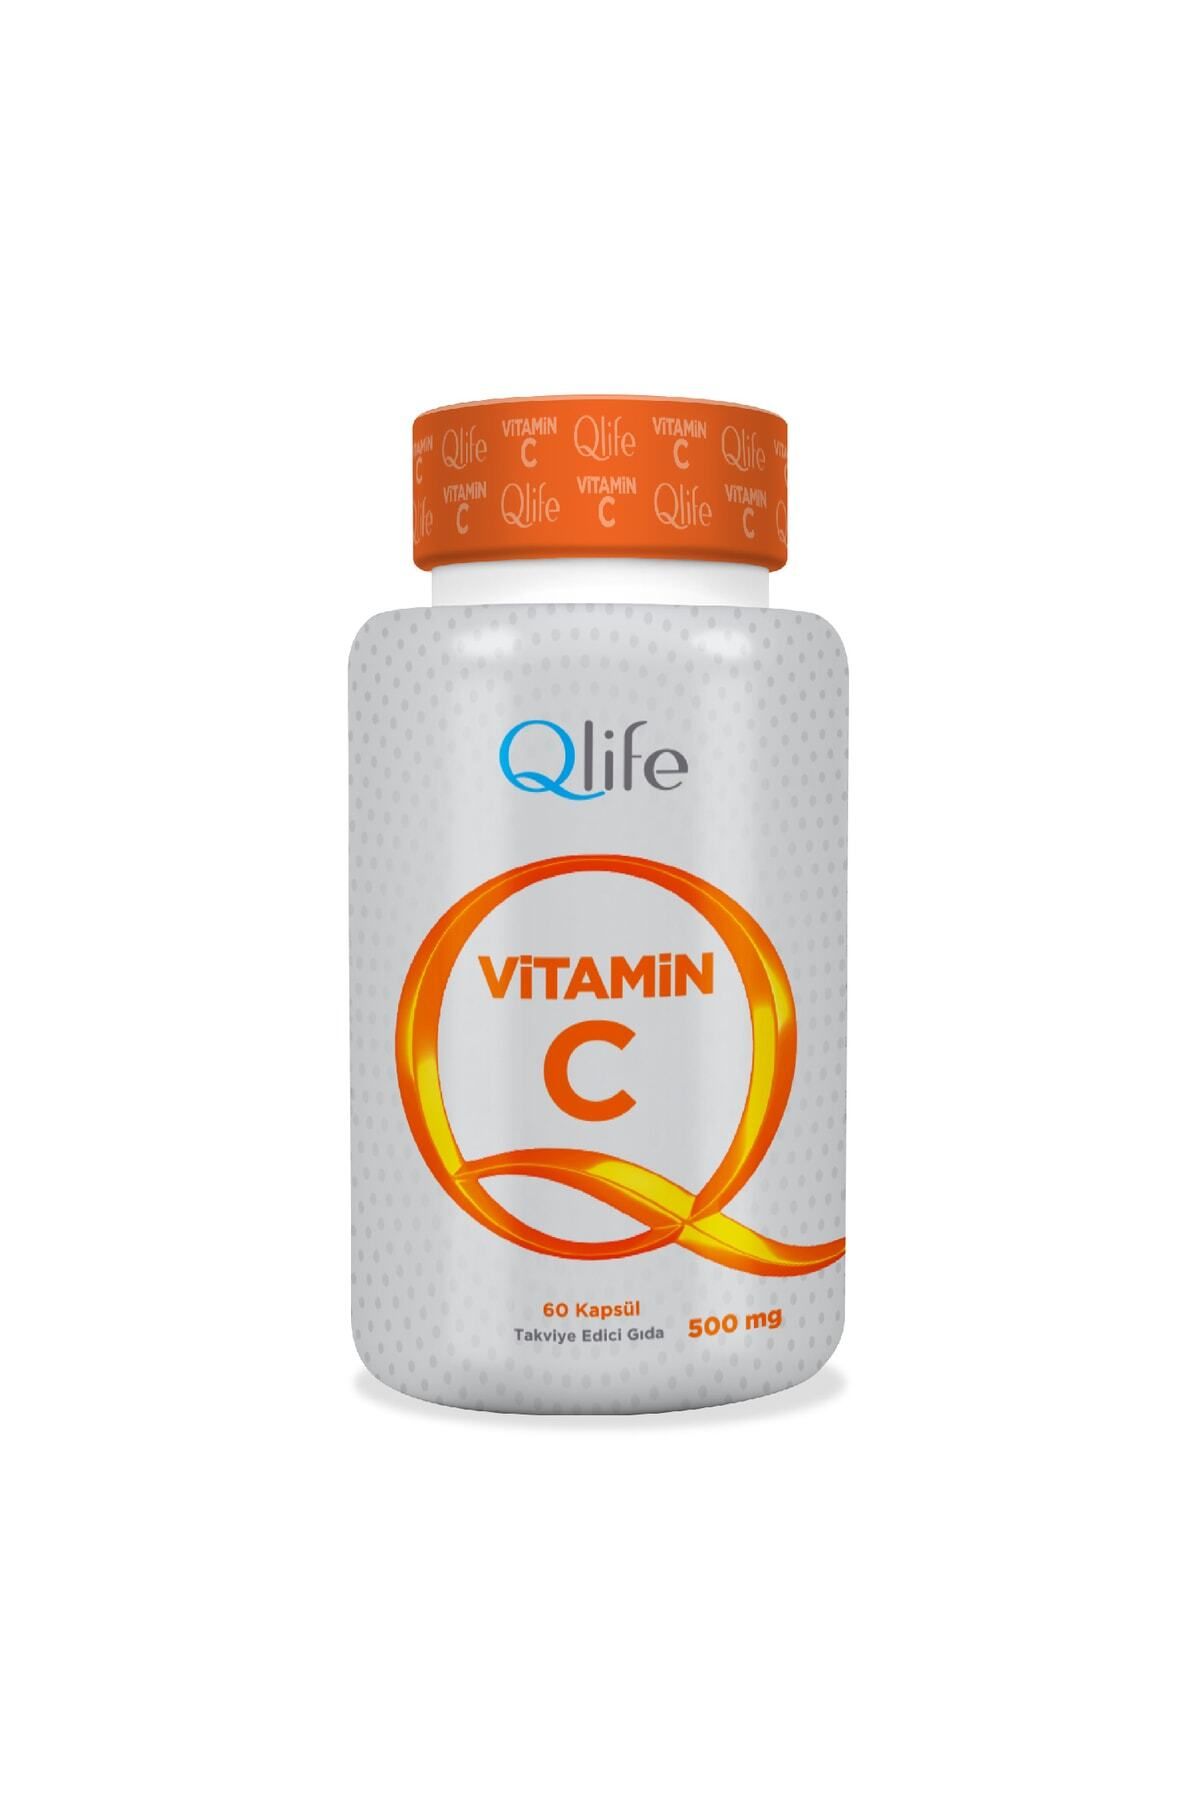 Q LİFE Qlife Vitamin C 500 mg 60 Kapsül